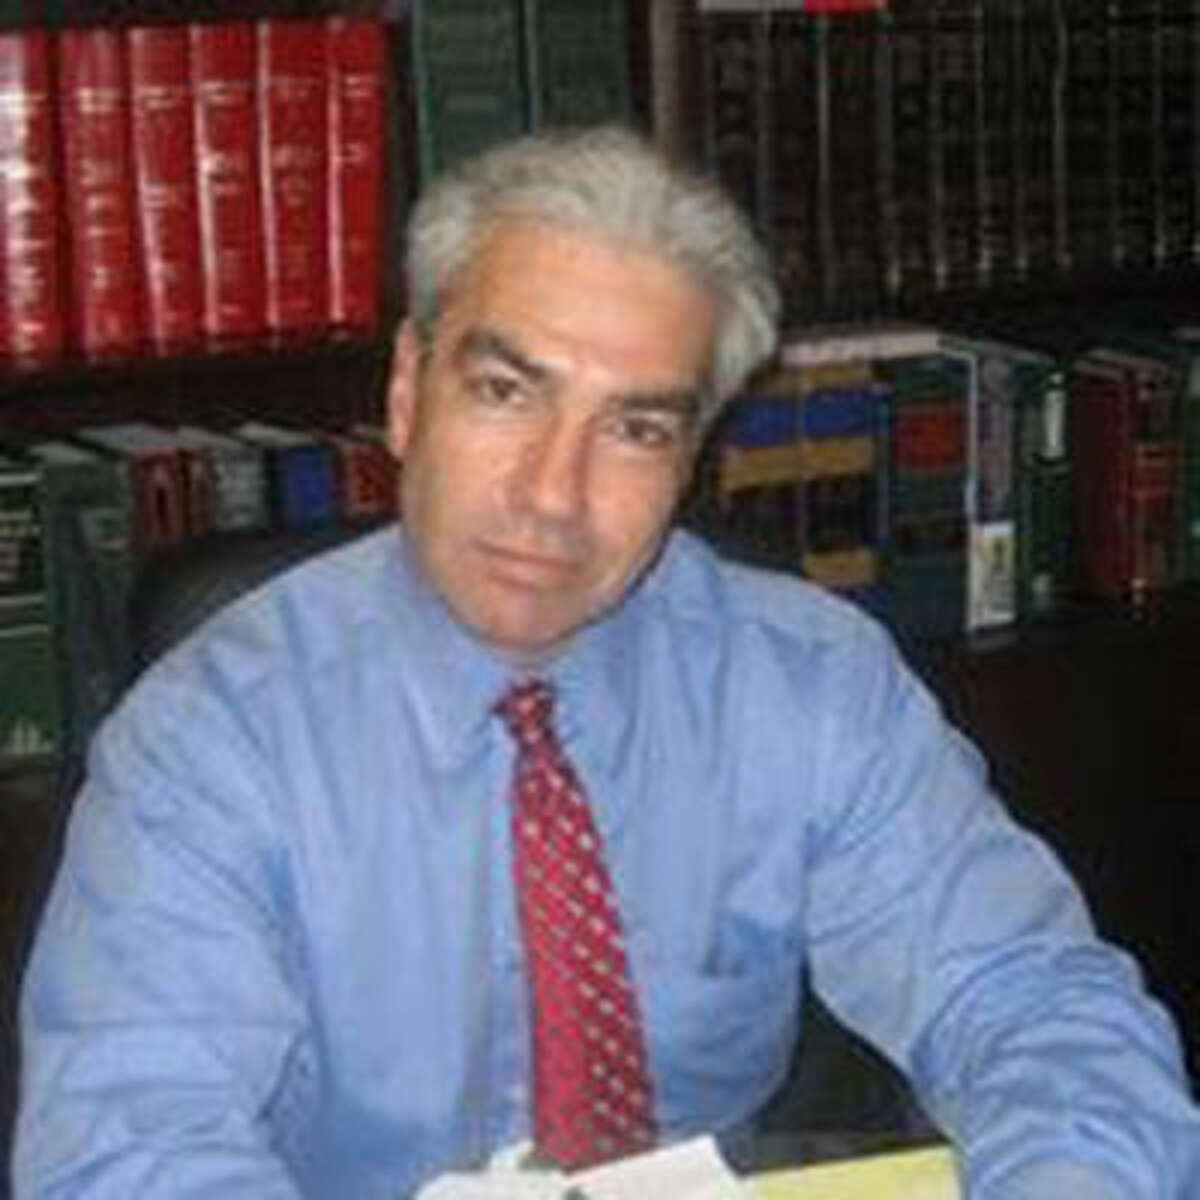 Michael R. Corsello